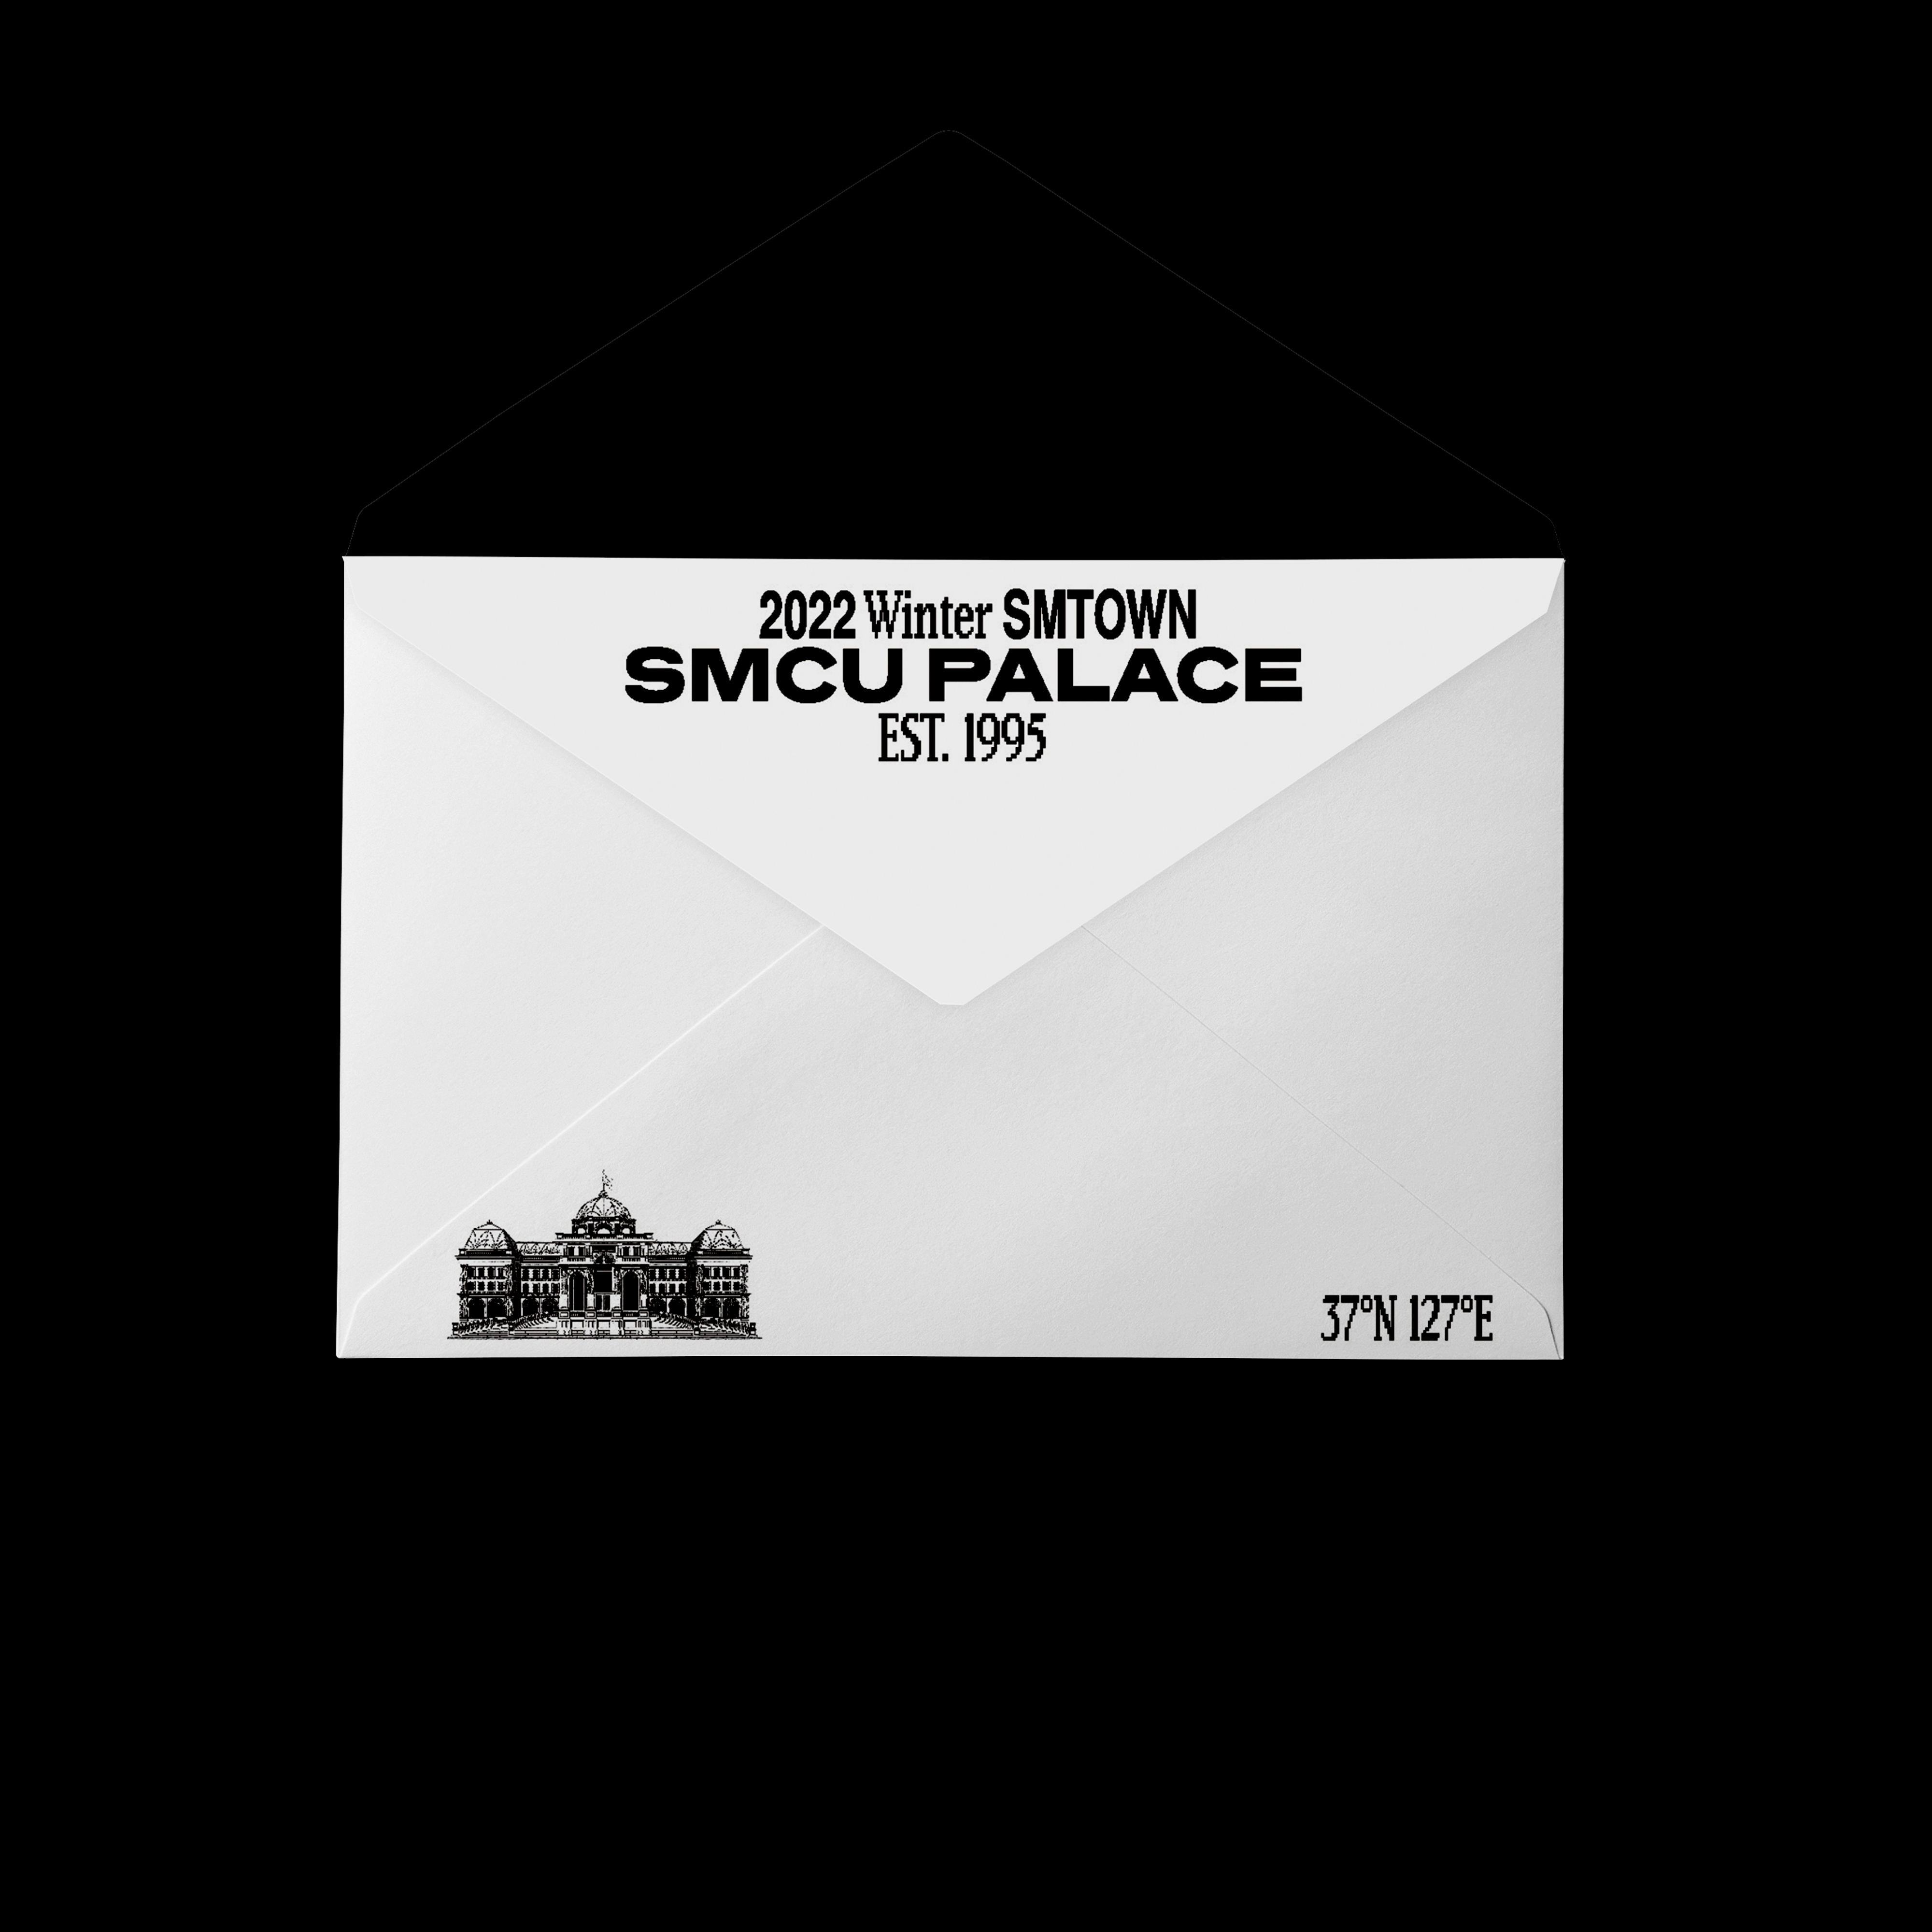 [全款 裸专] KANGTA - 2022 Winter SMTOWN : SMCU PALACE (GUEST. KANGTA) (Membership Card Ver.)_AllHyun-安七炫论坛